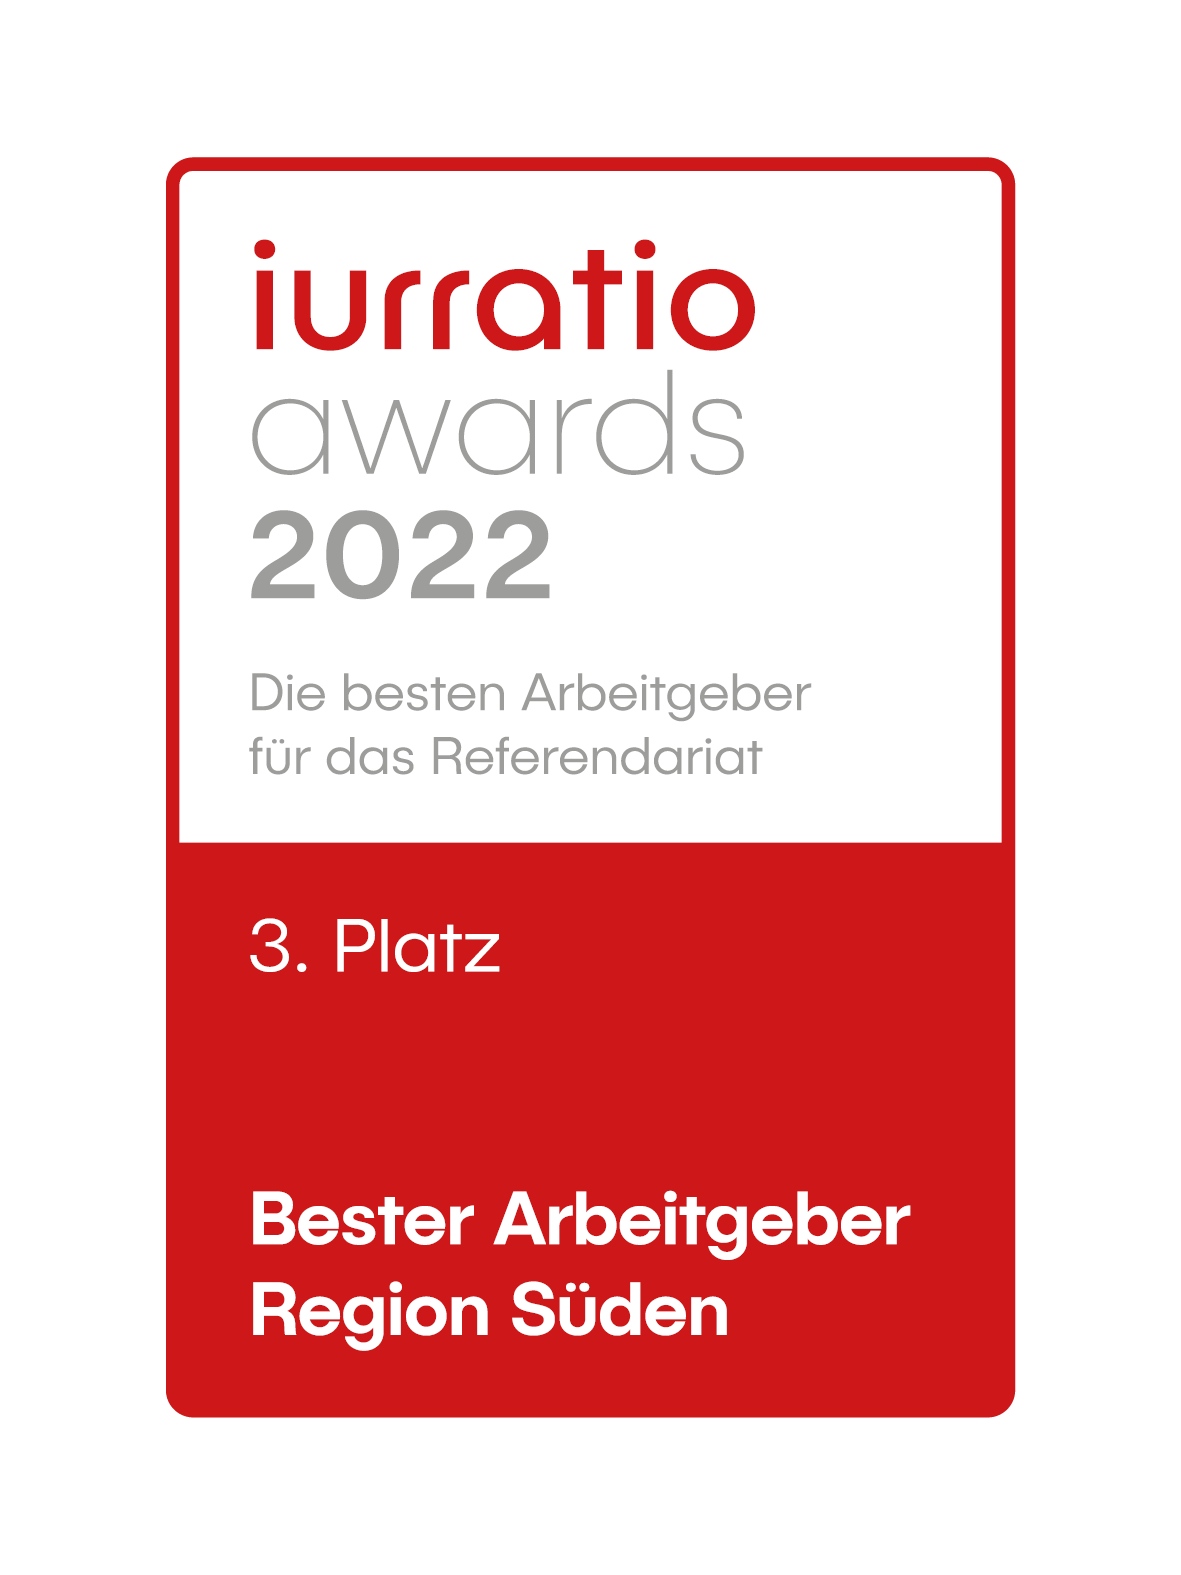 Award: iurratio